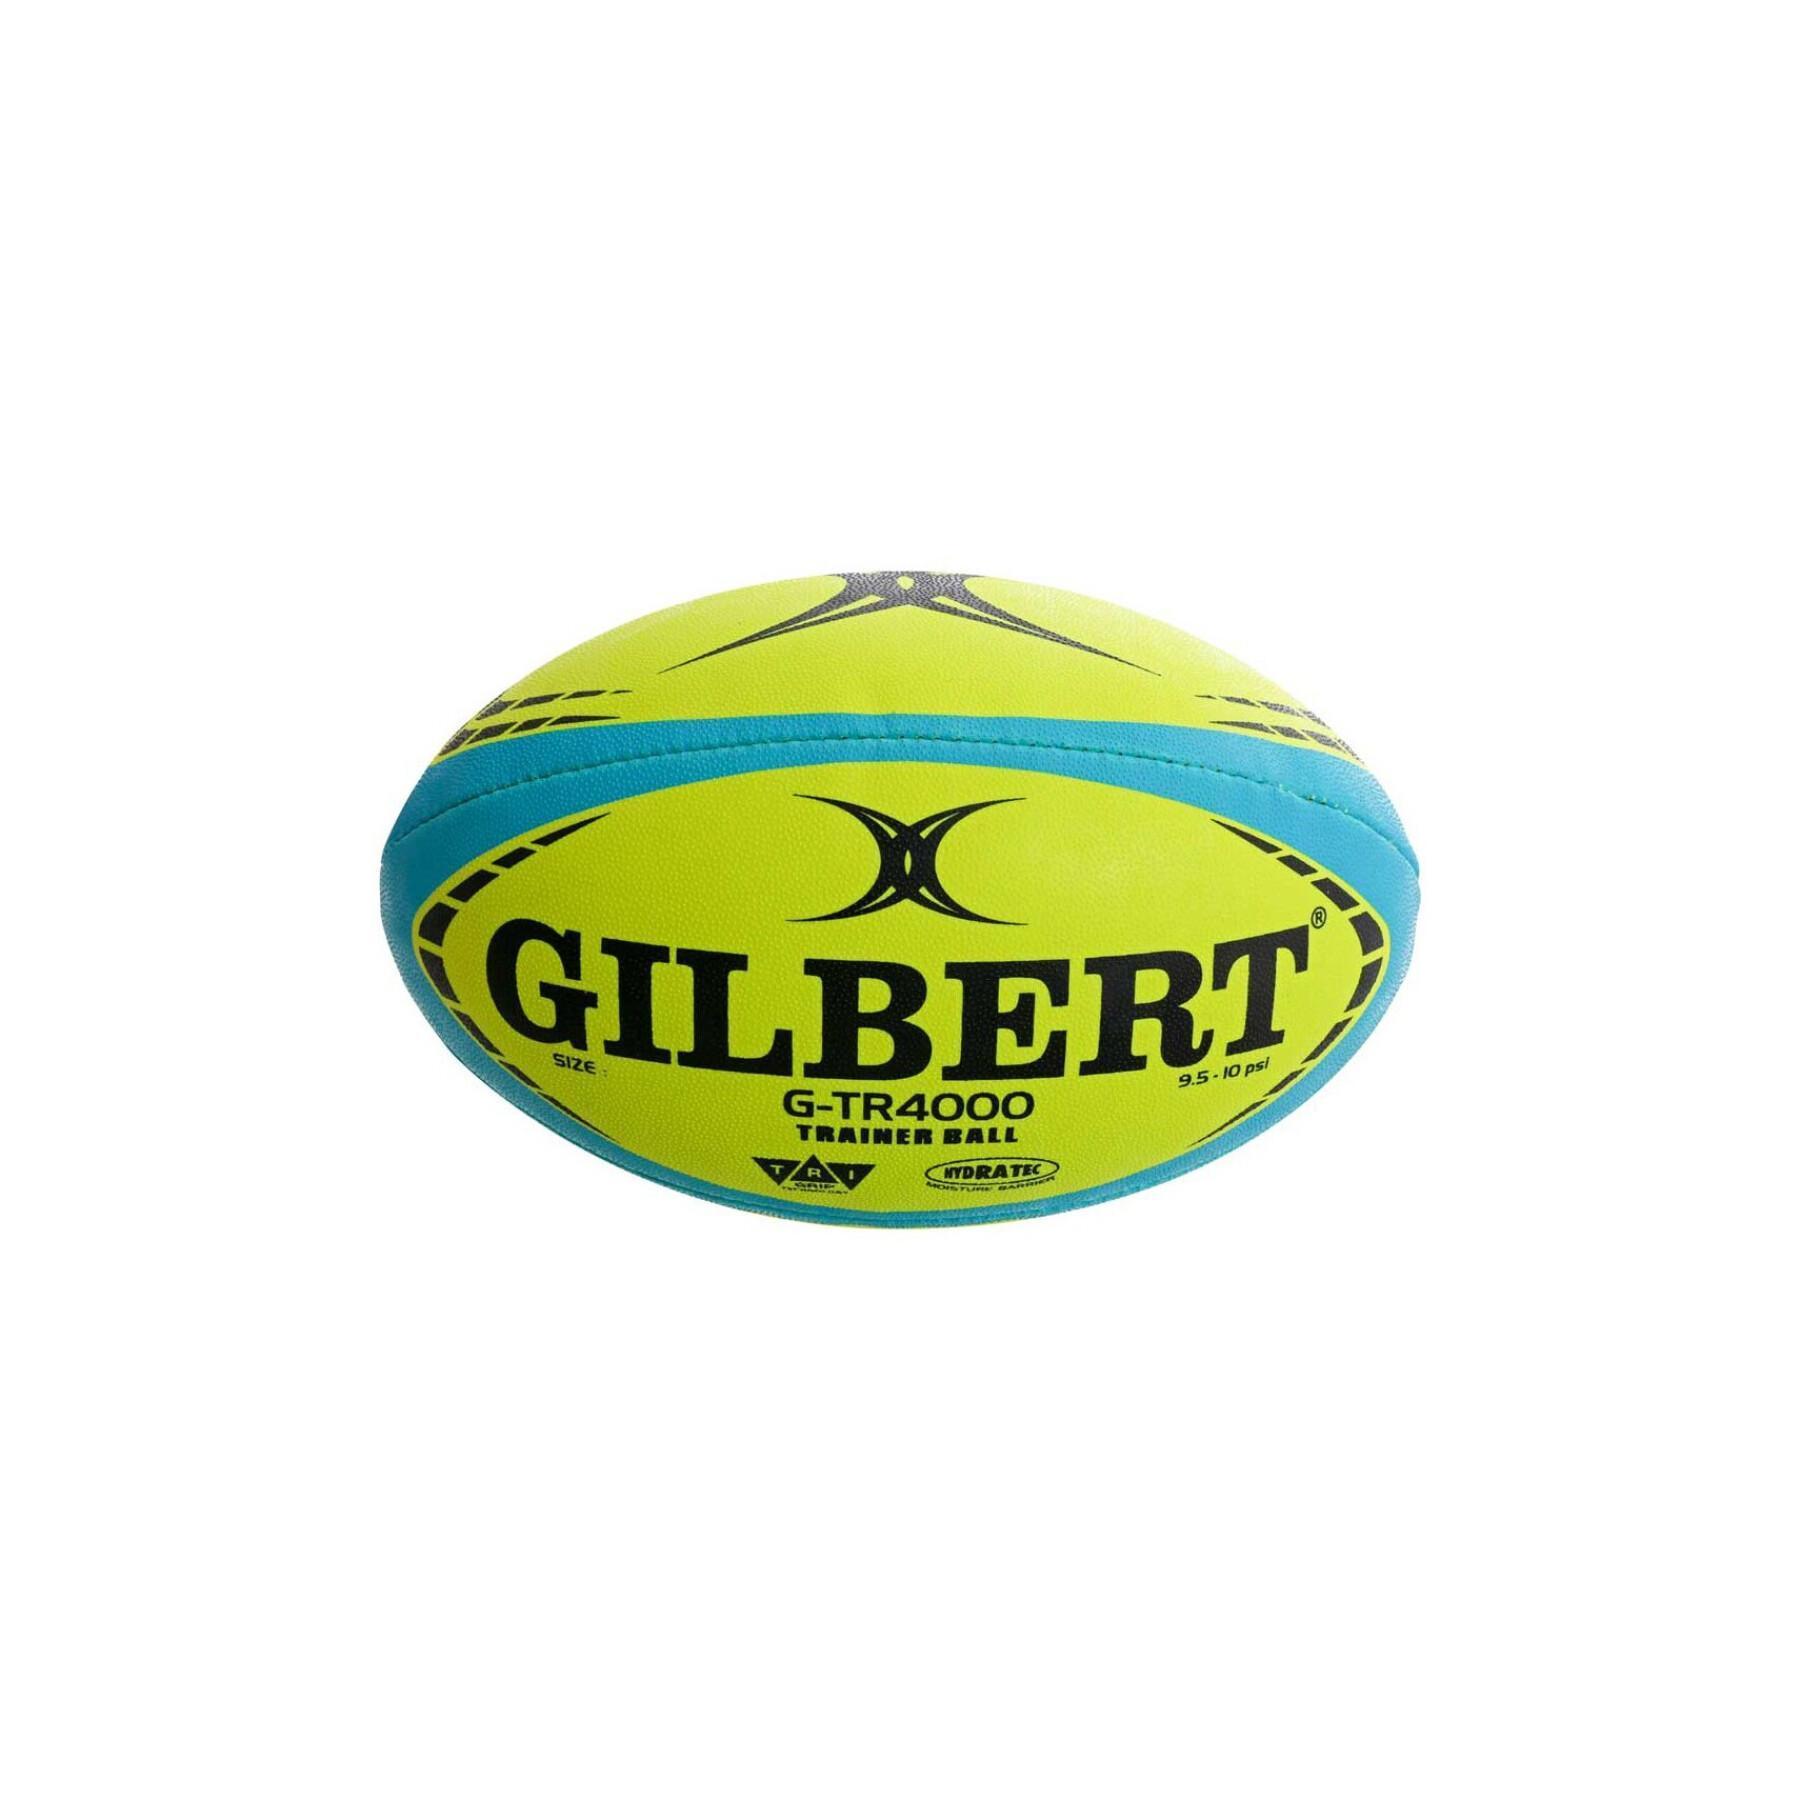 Rugbyball Gilbert G-TR4000 Trainer Fluo (Größe 4)